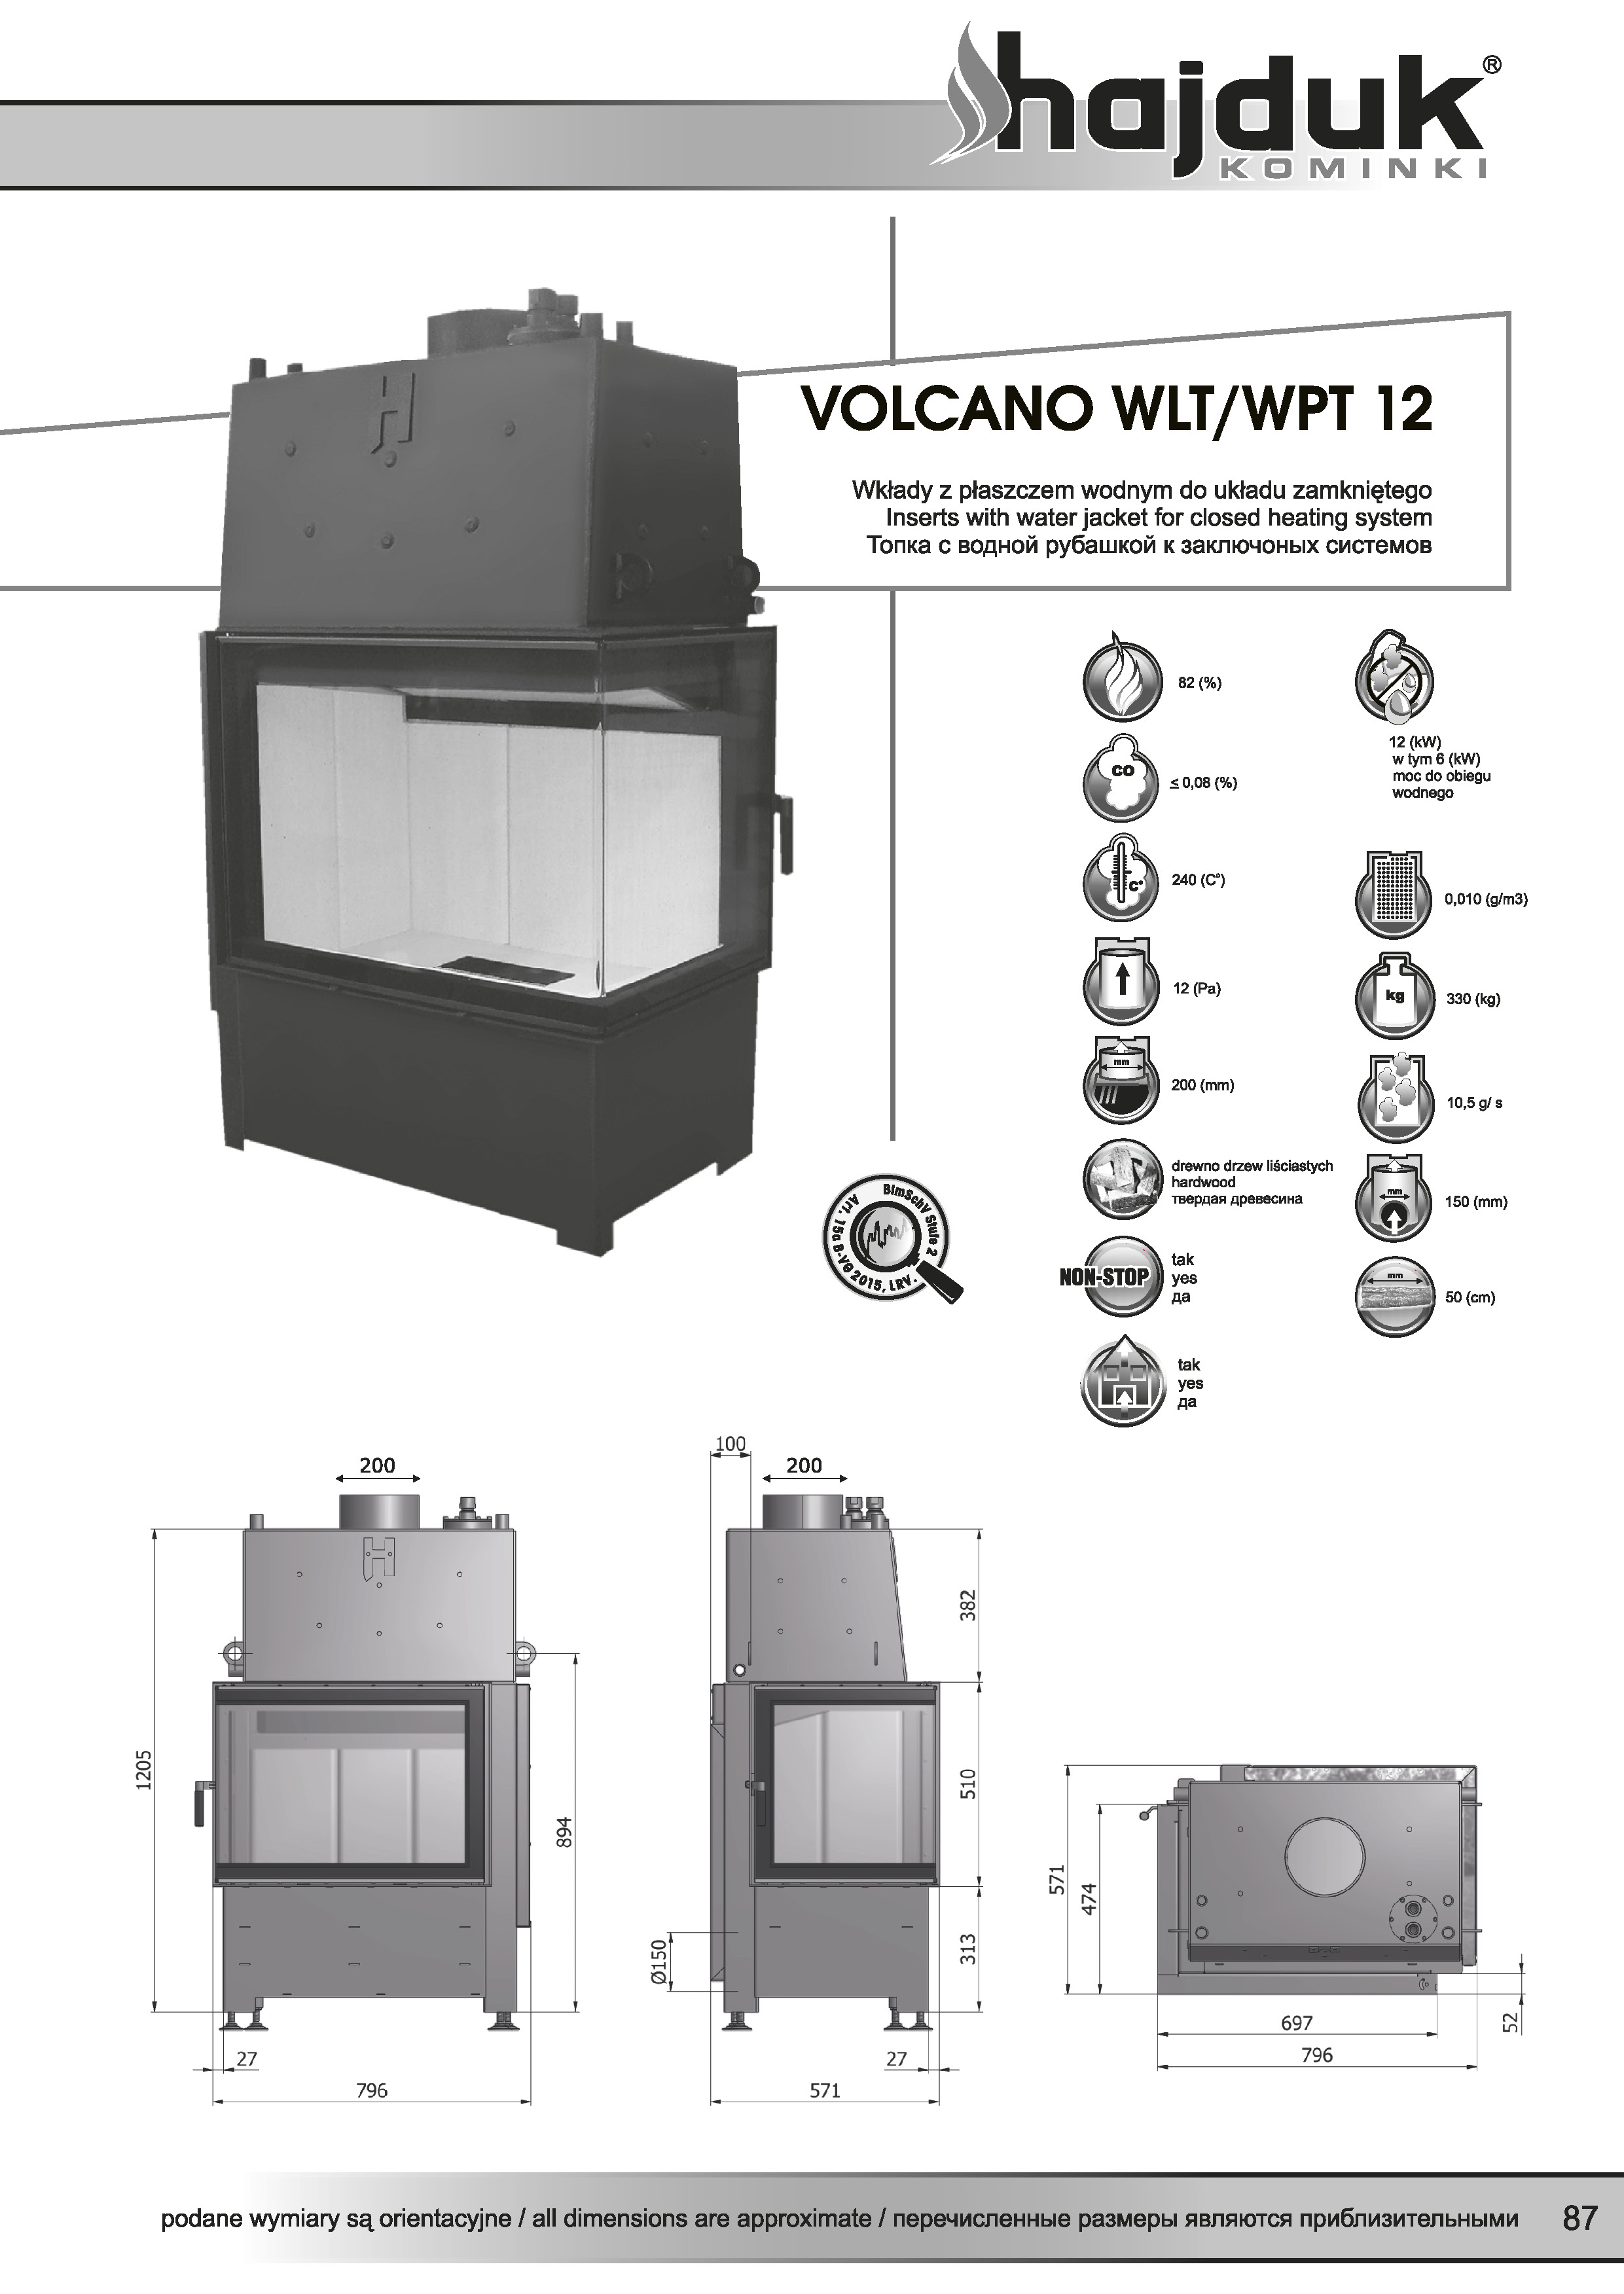 Volcano%20WLT%20WPT%20 %2012%20 %20karta%20techniczna - Wkład kominkowy Hajduk  Volcano WLT 12